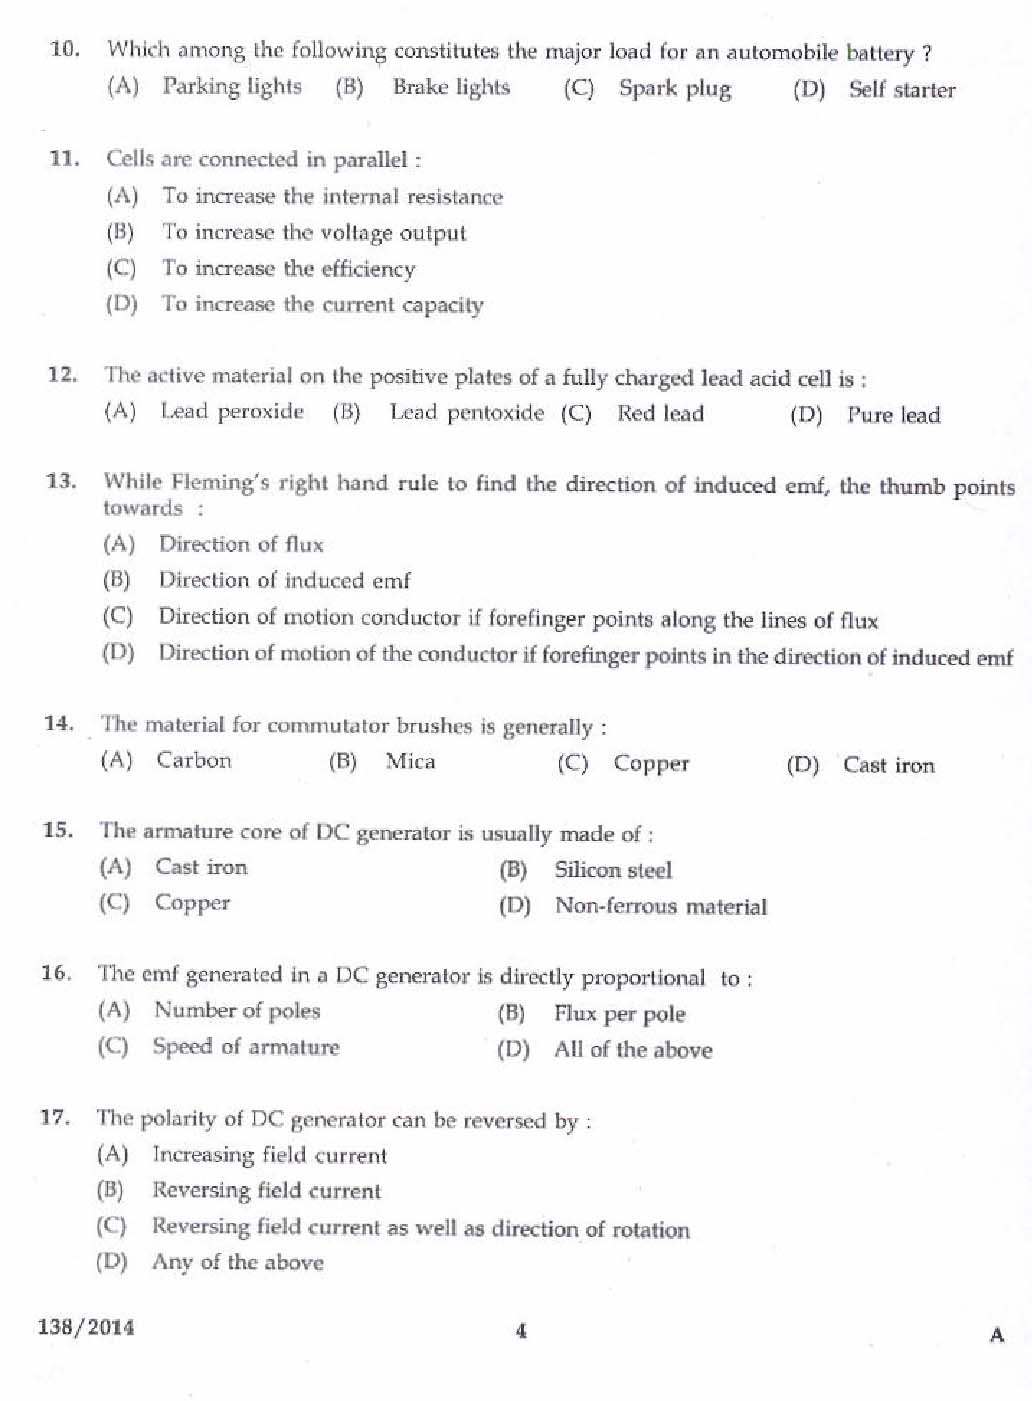 Kerala PSC Junior Instructor Exam Question Paper Code 1382014 2